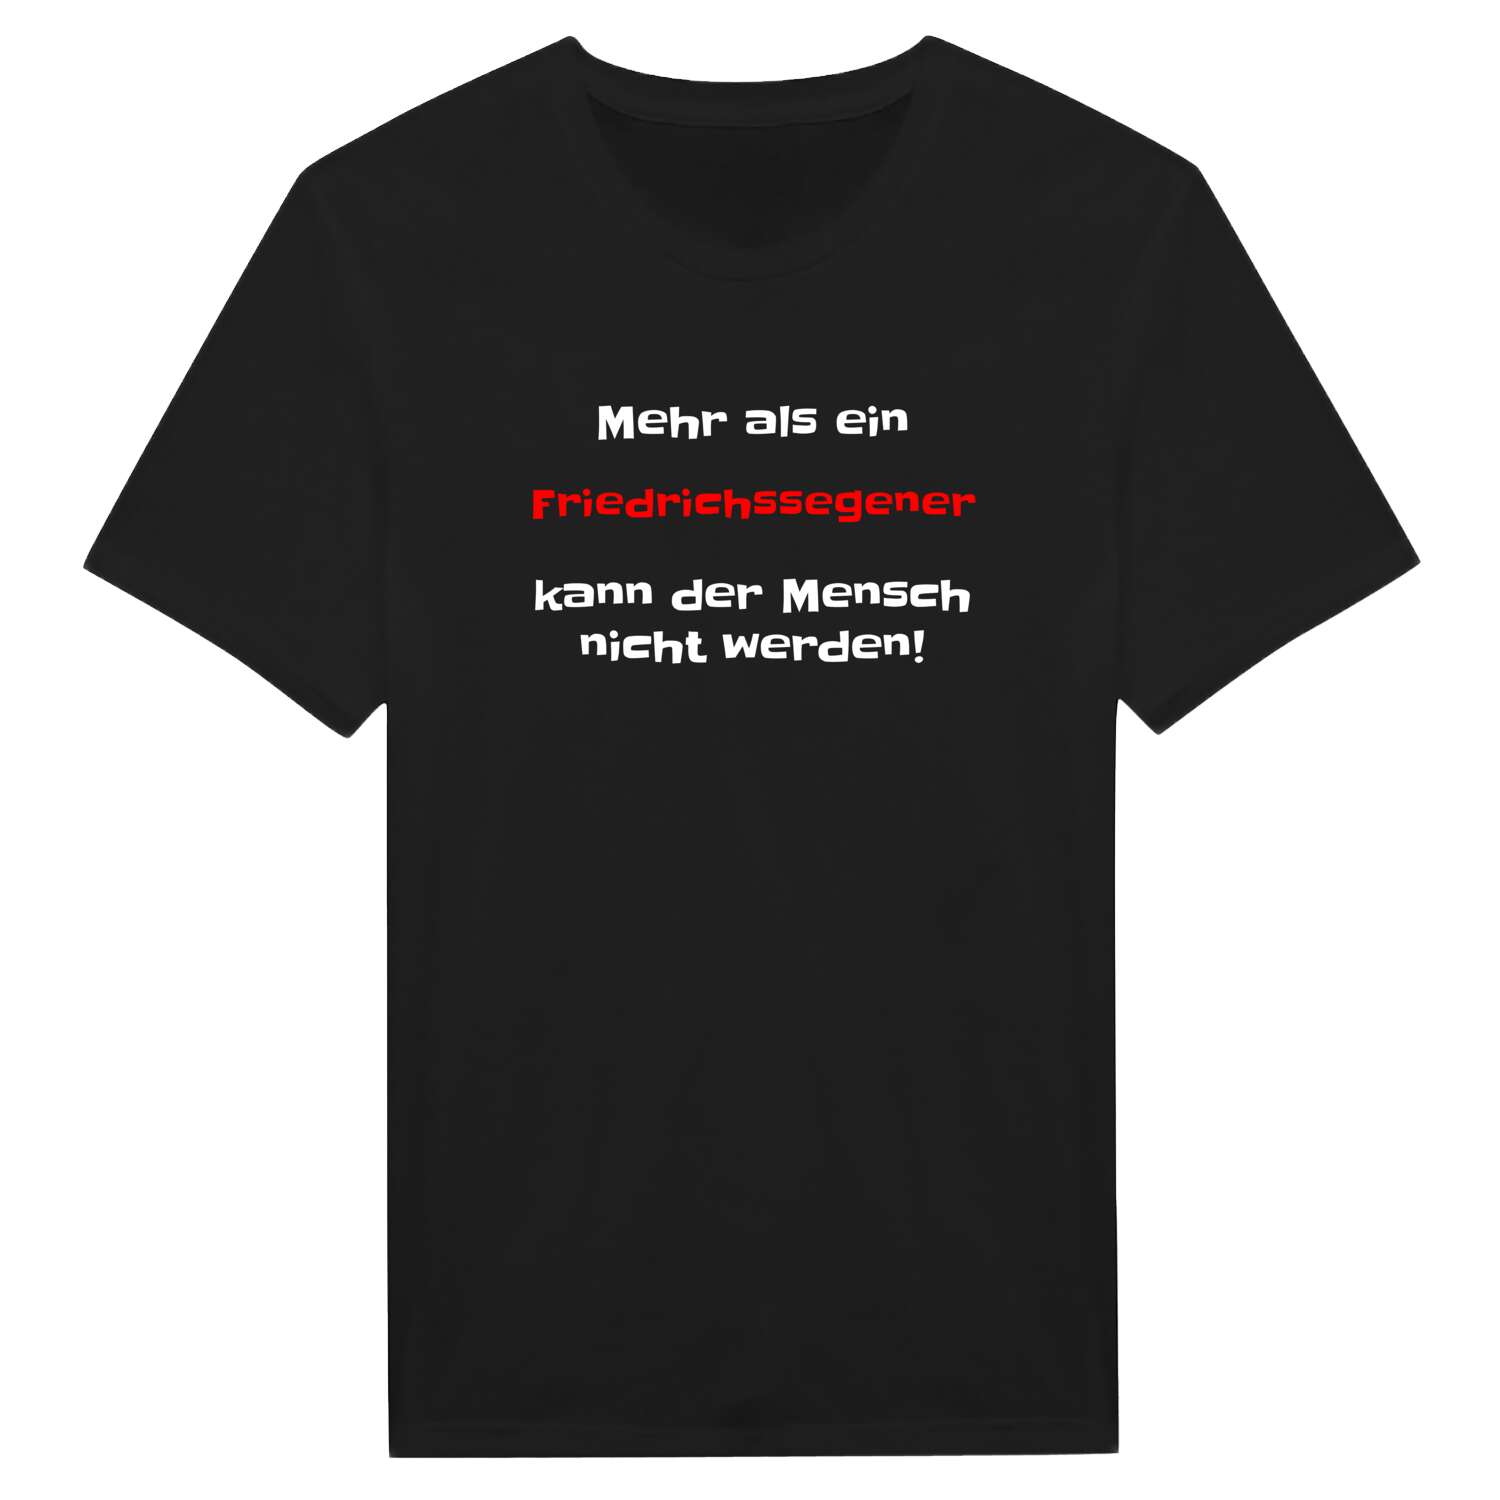 Friedrichssegen T-Shirt »Mehr als ein«